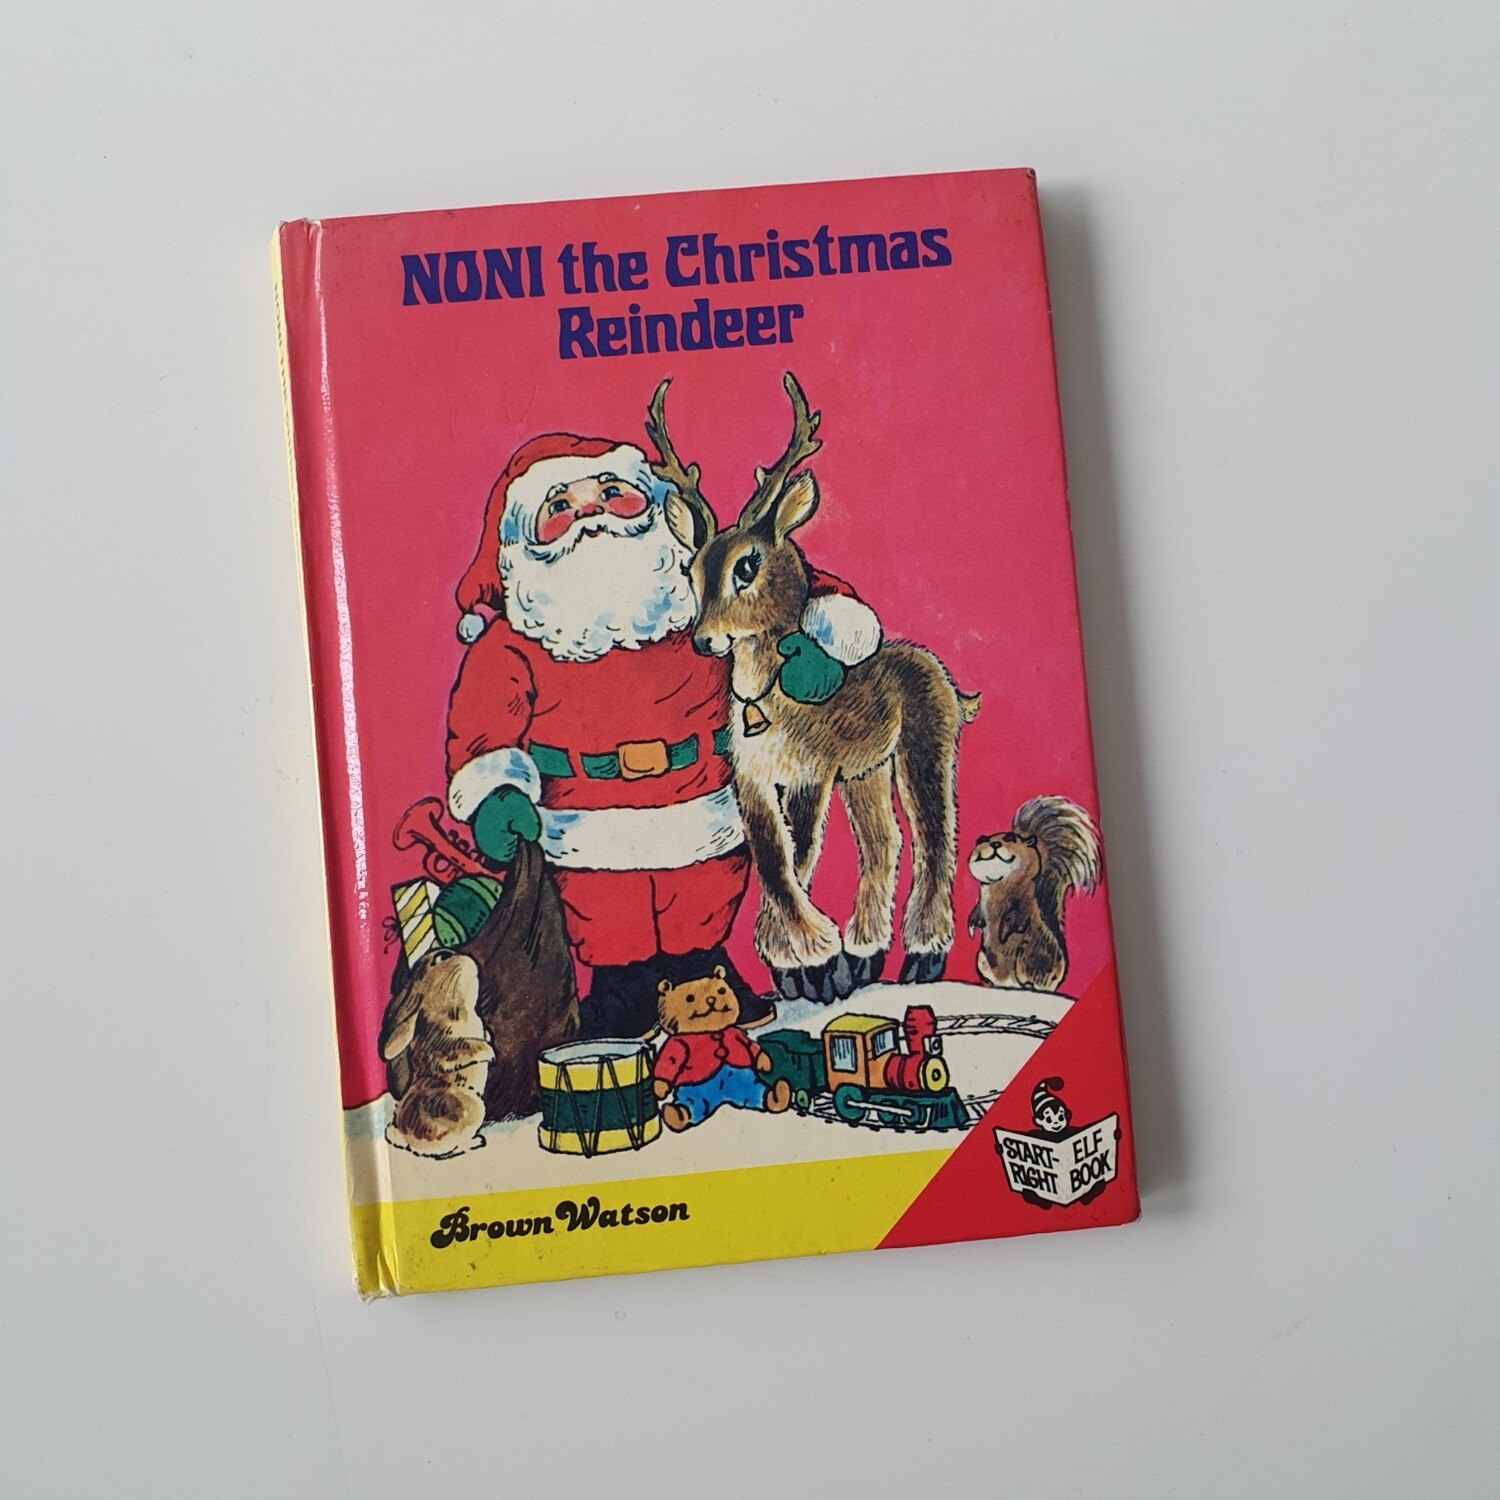 Noni the Christmas Reindeer